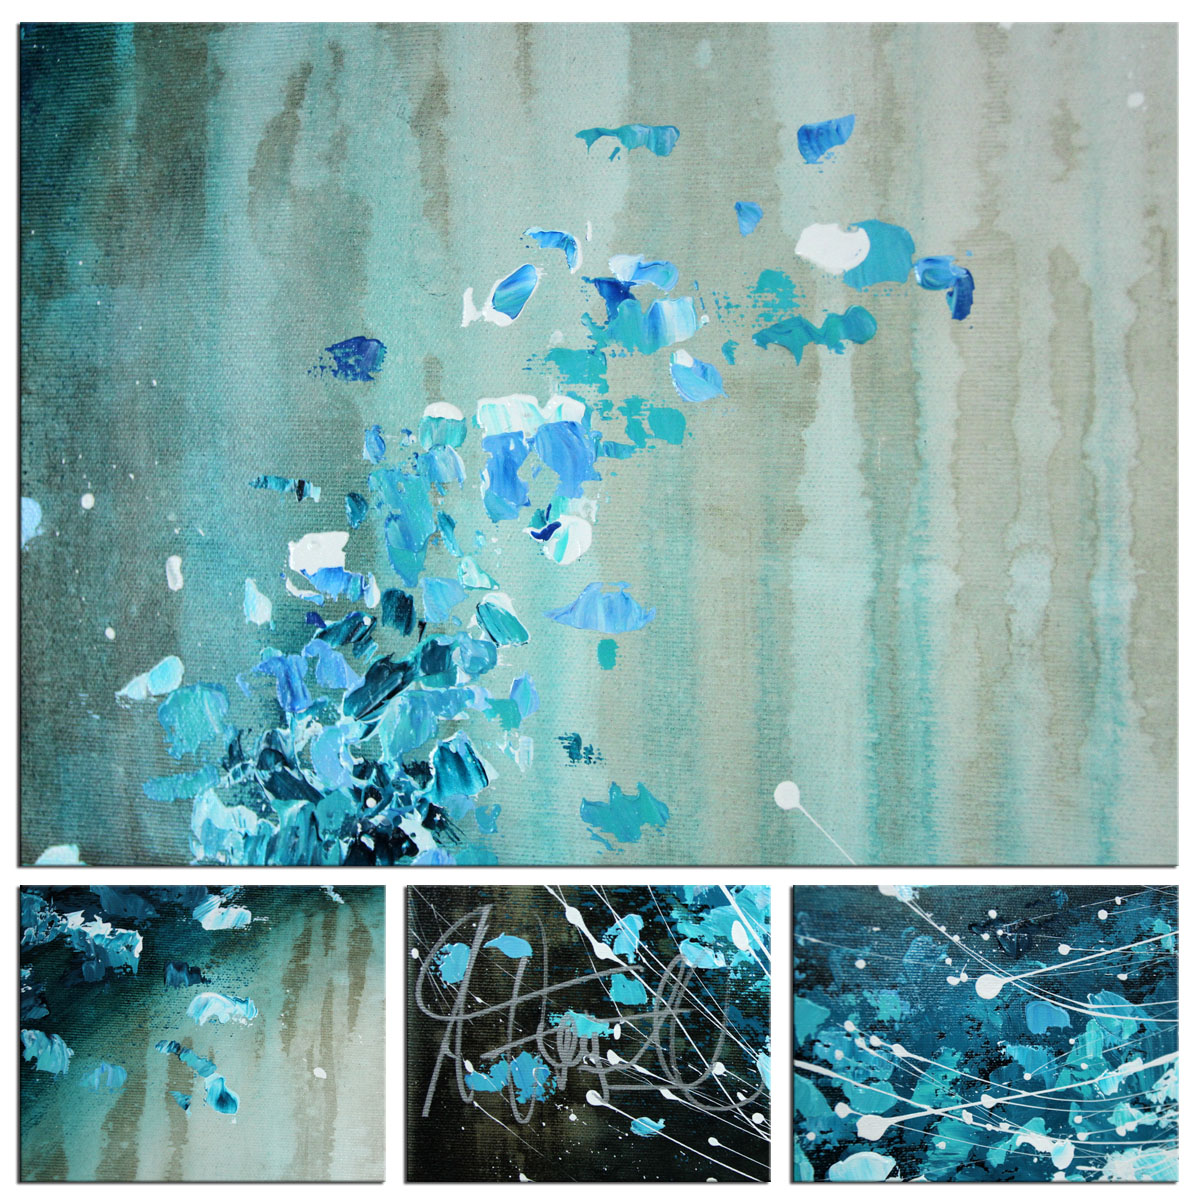 Acrylbild von A. Freymuth: "Blue Wave"